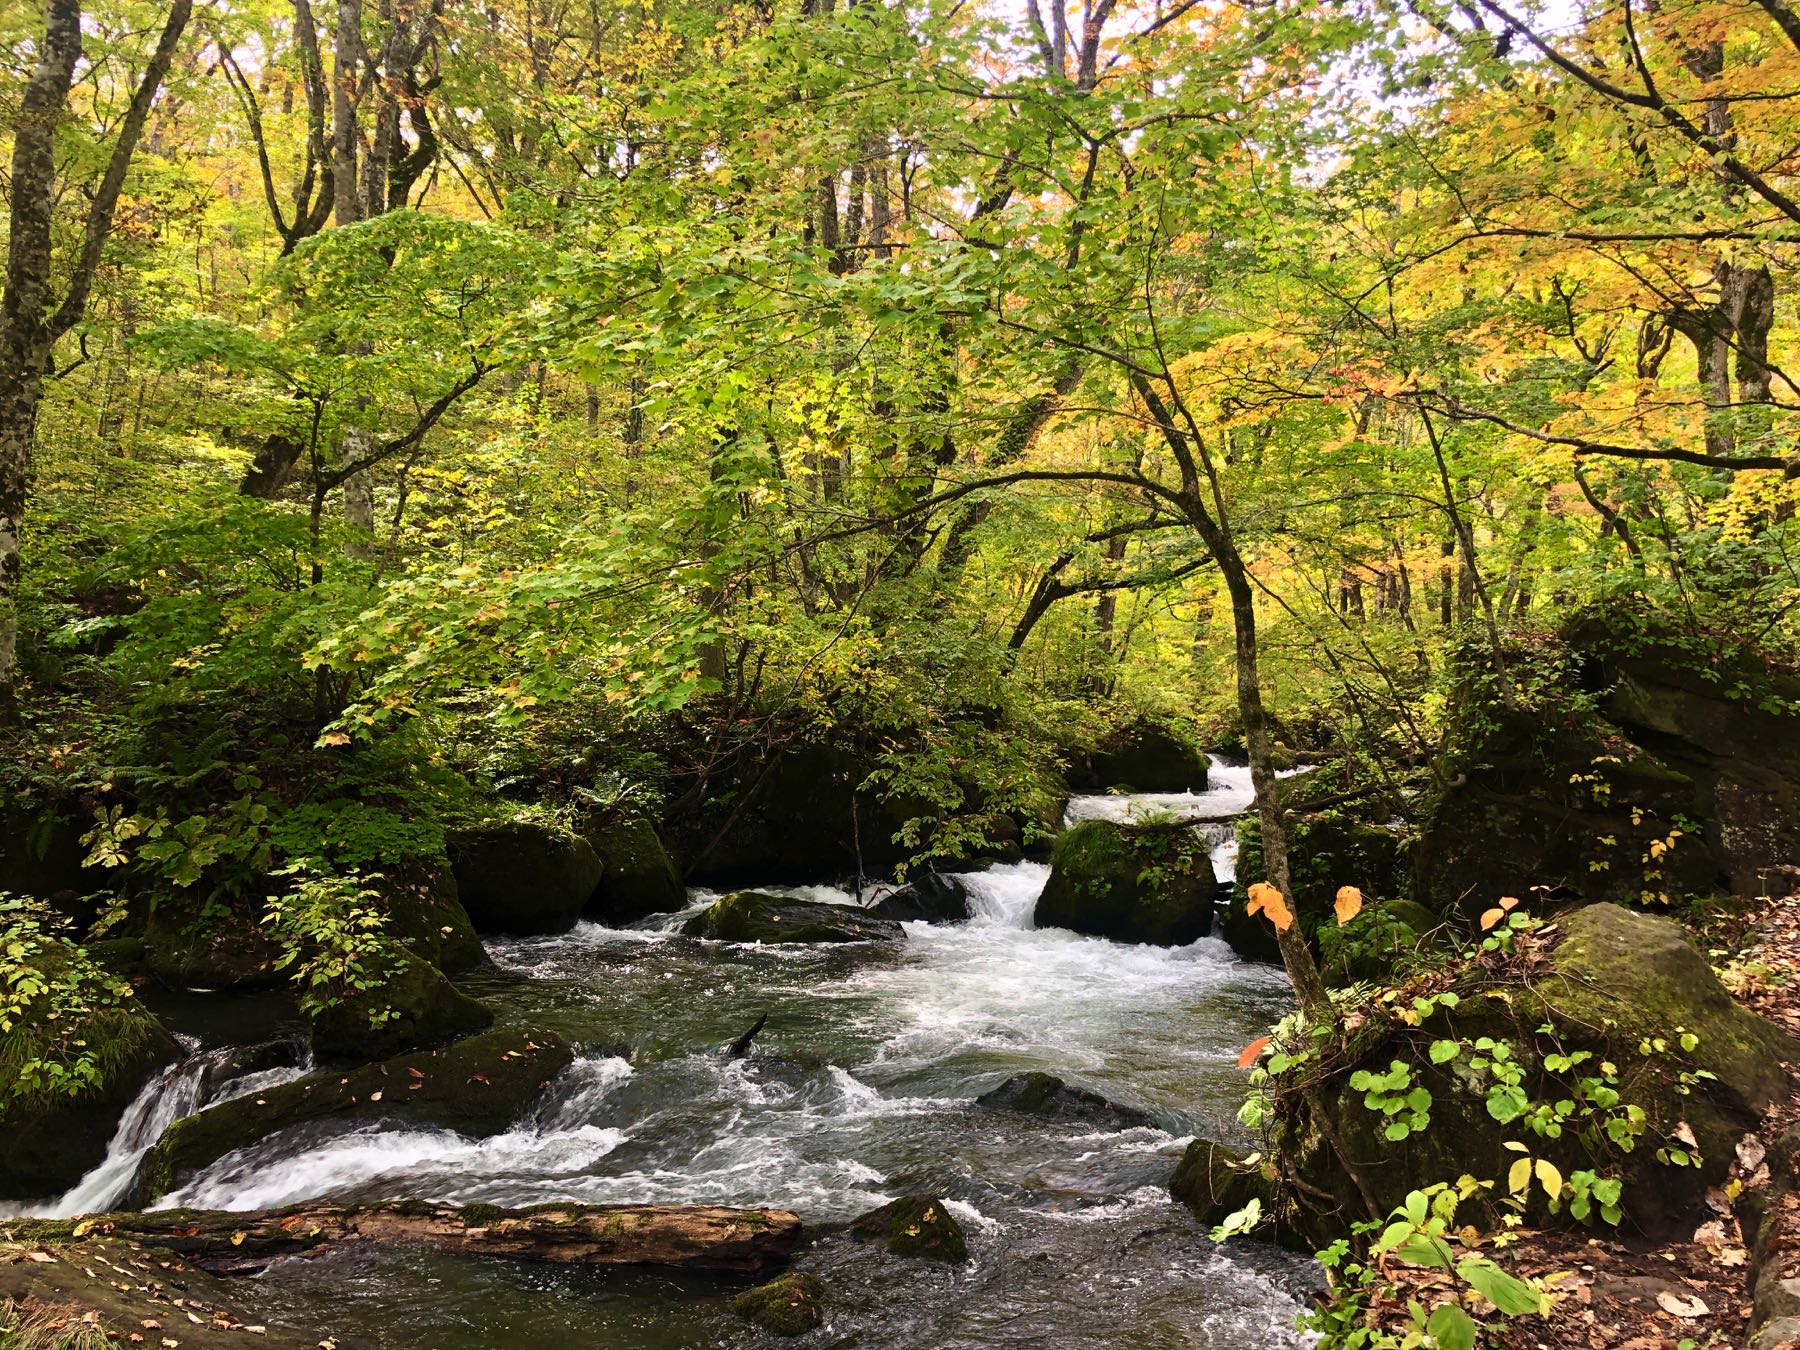 The pretty nature surrounding the Oirase Stream